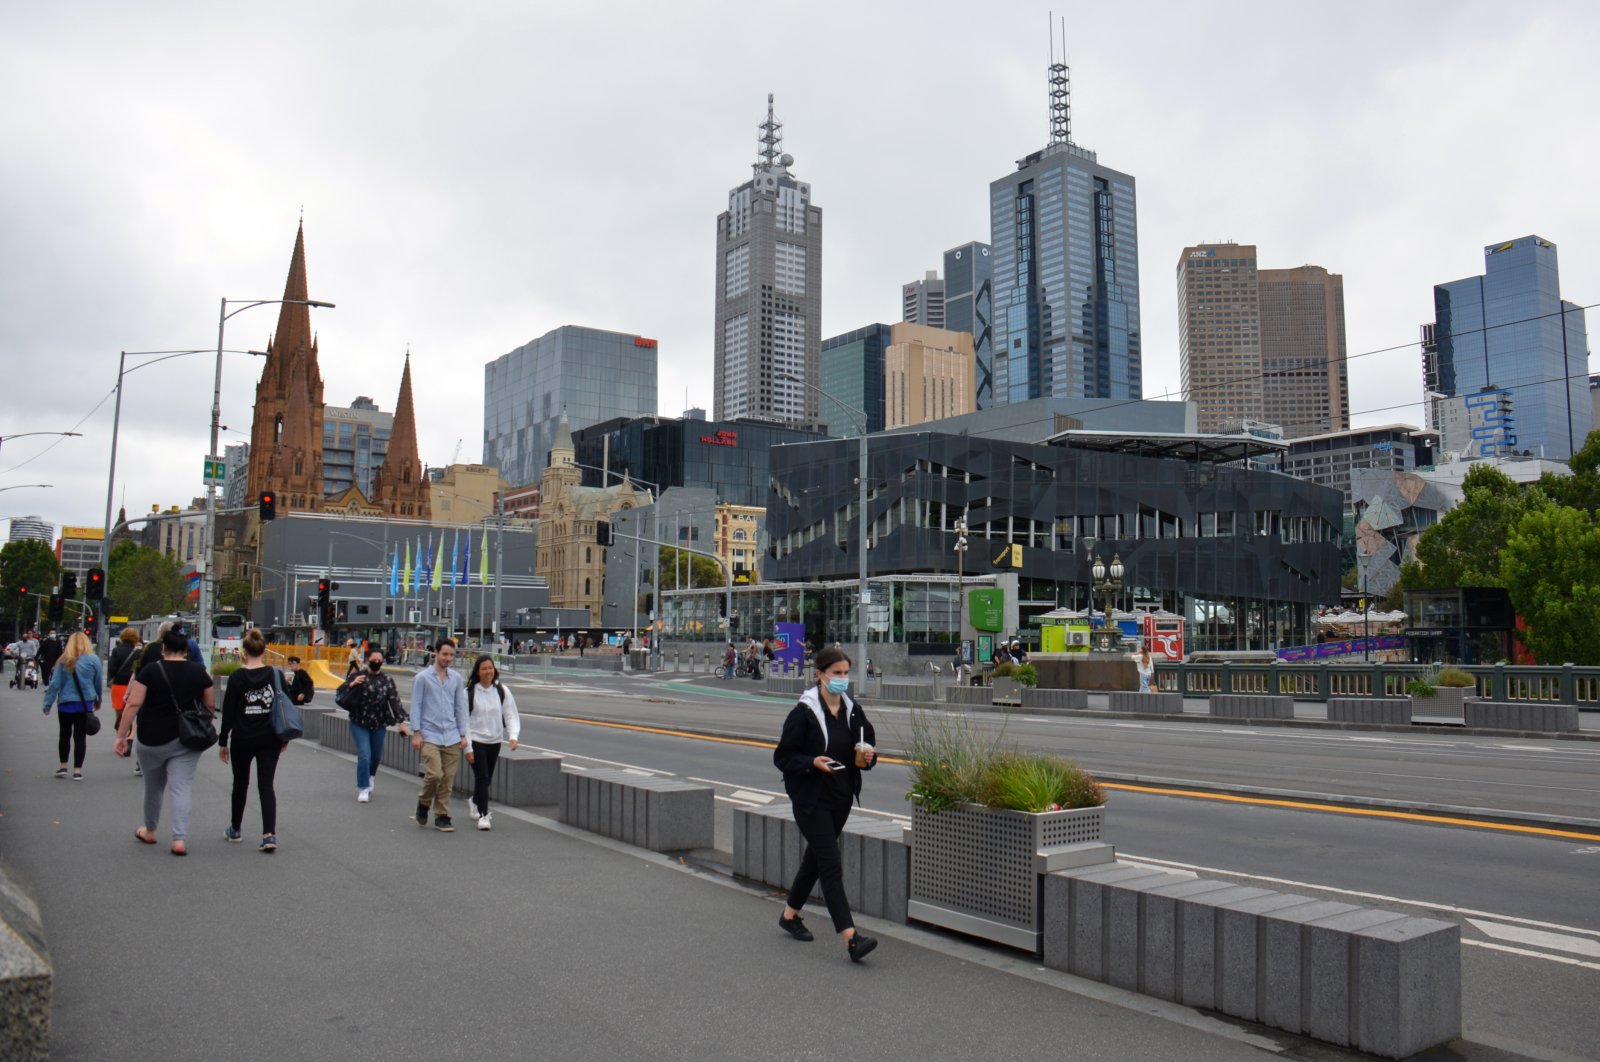 People walk on a street in Melbourne, Australia, Jan. 8, 2022. (AA Photo)